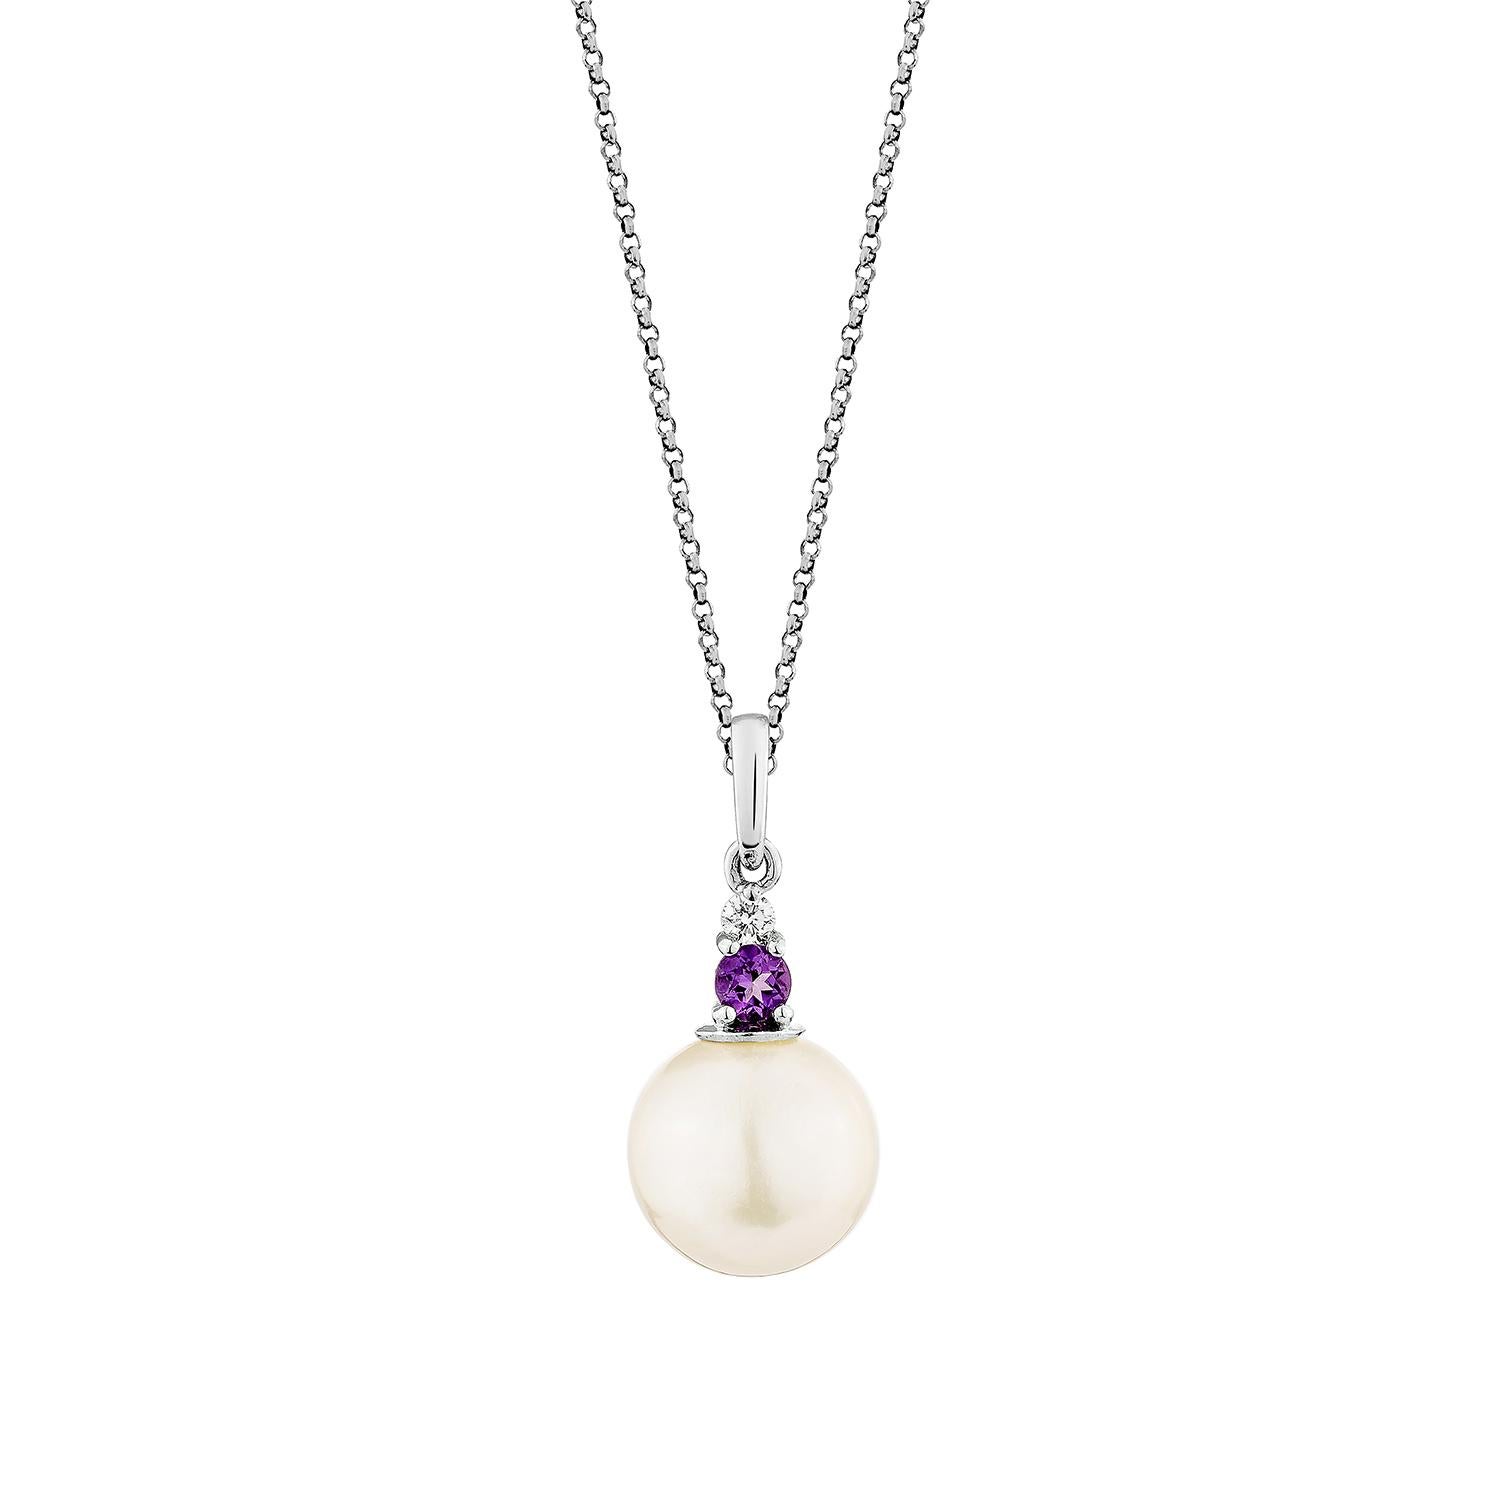 Whiting Un ravissant pendentif en perles blanches et améthyste est parfait pour les personnes qui apprécient la qualité et qui souhaitent le porter en toute occasion ou lors d'une célébration. Le pendentif en or blanc perle blanche orné d'une